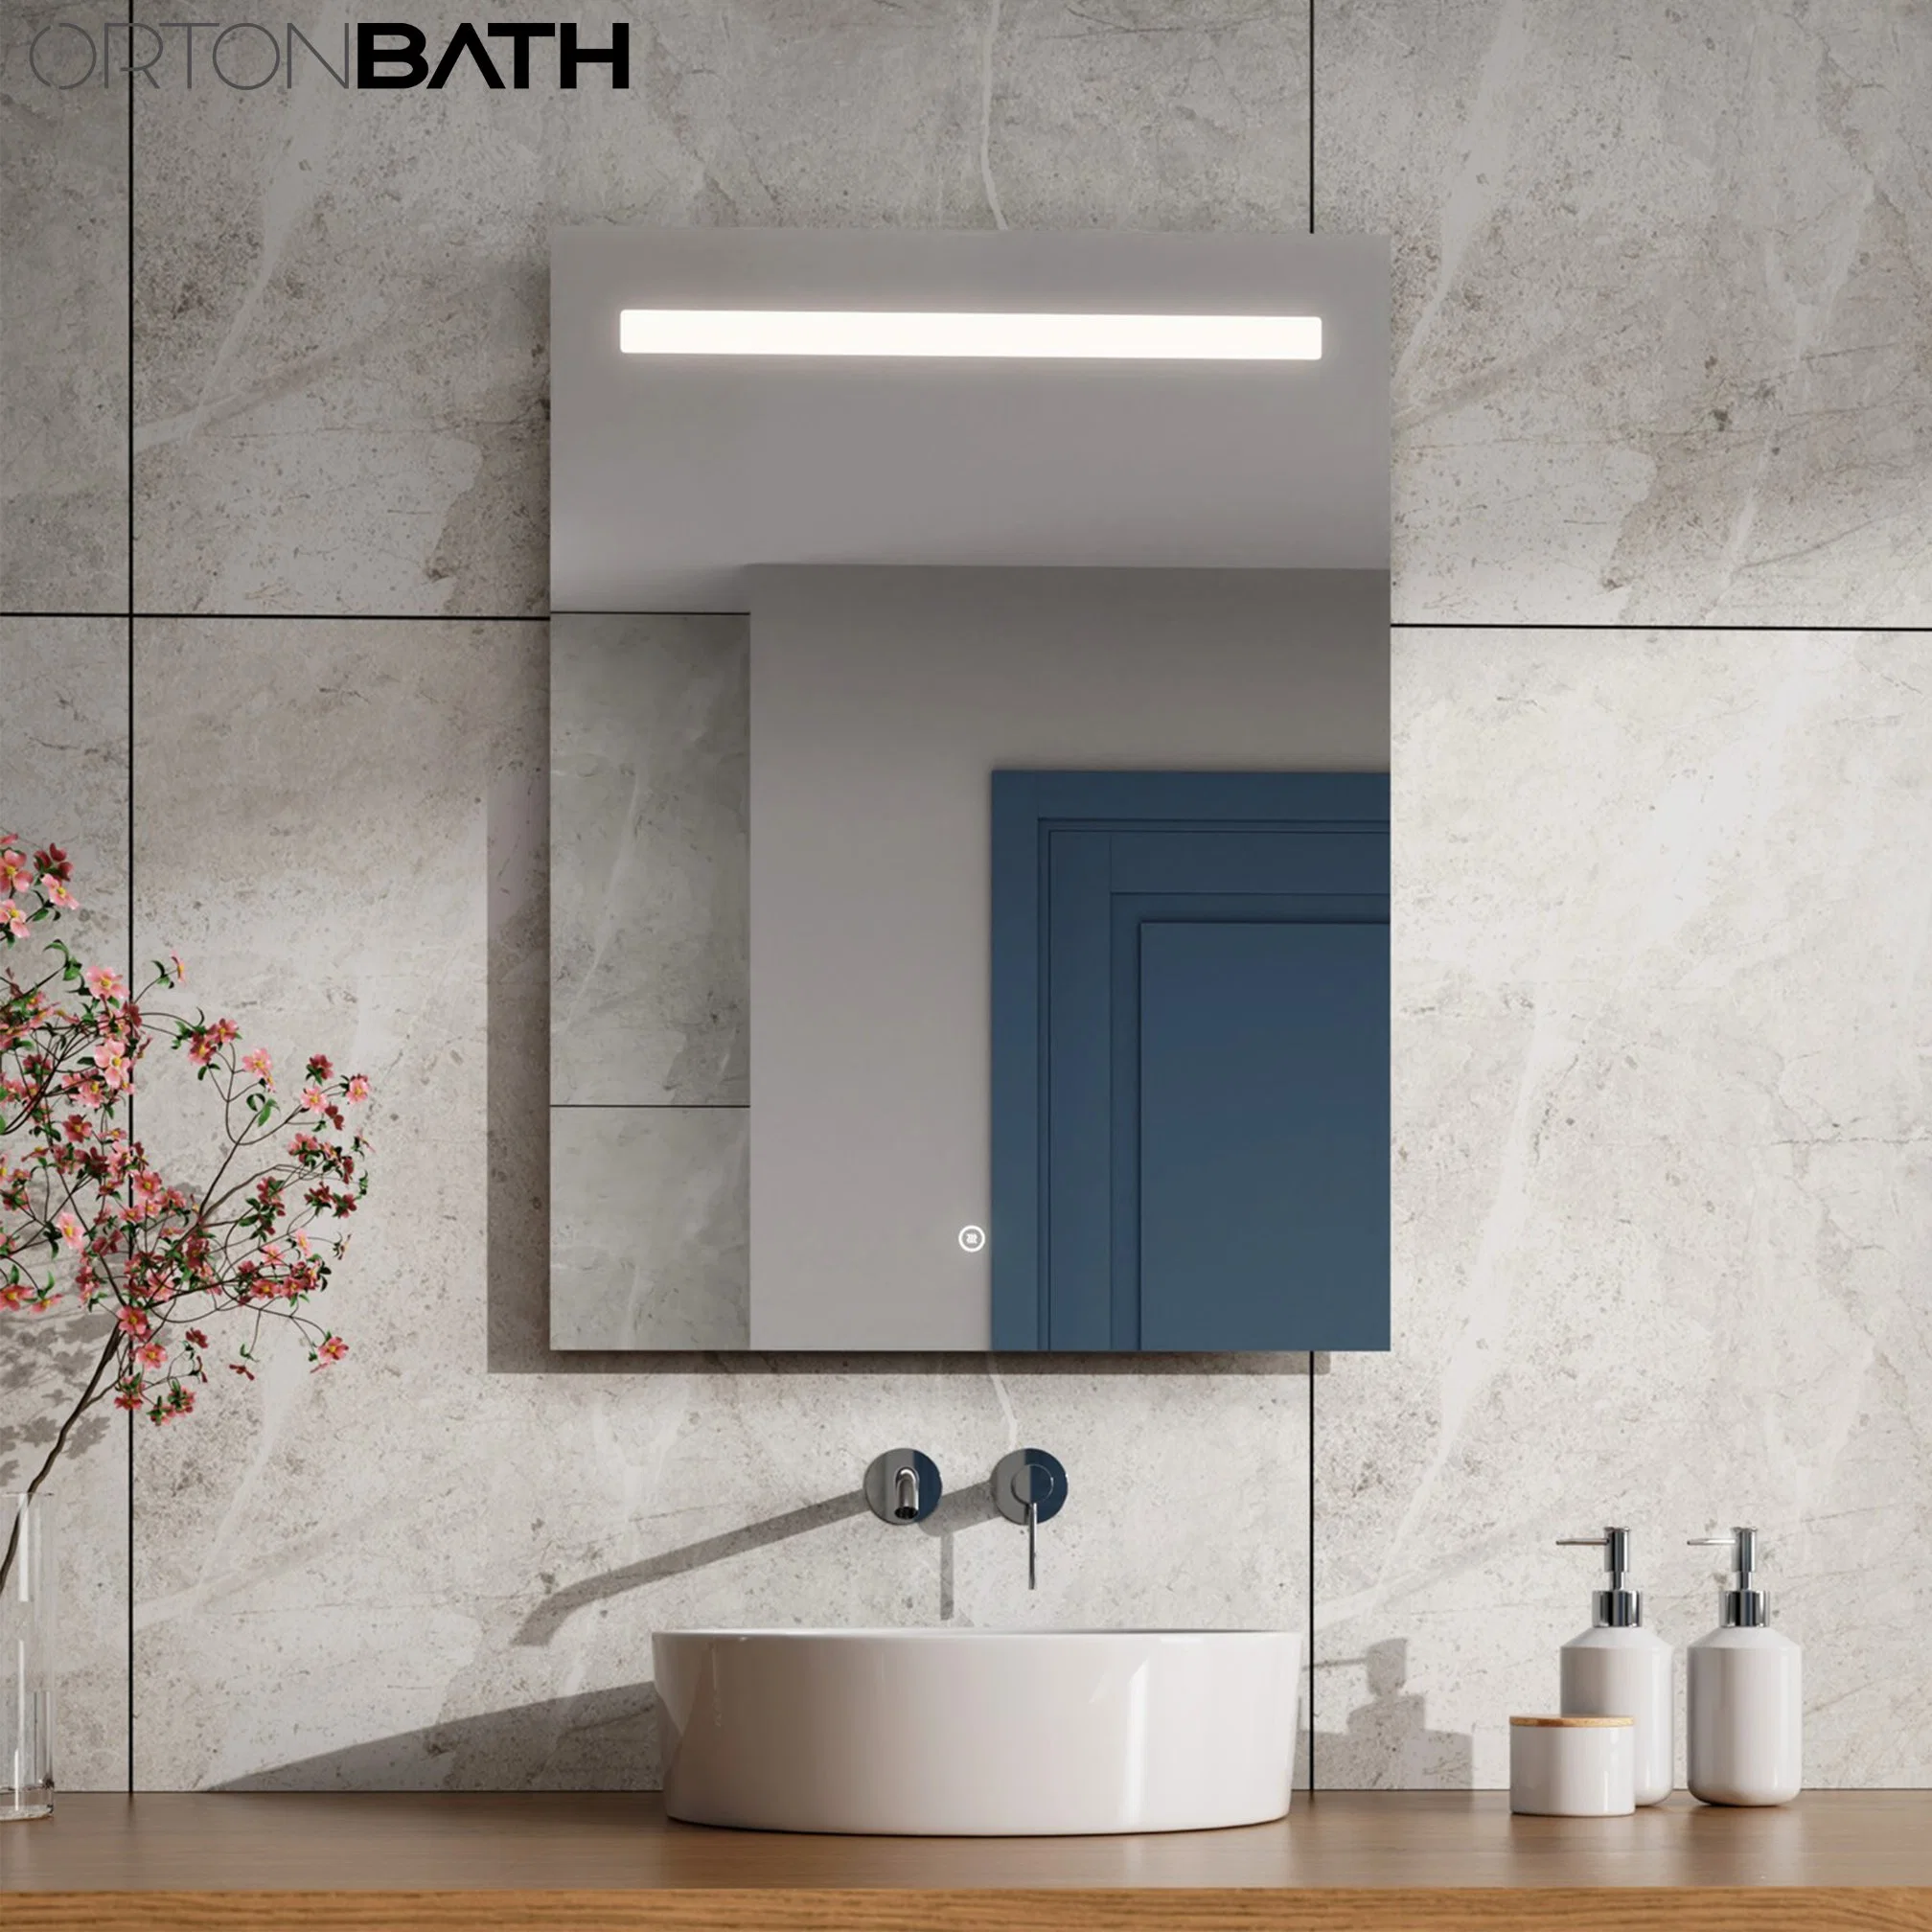 Salle de bains OrtonBath miroir de maquillage à DEL miroirs à écran tactile lumineux Miroir de salle de bains rectangulaire décoratif anti-buée